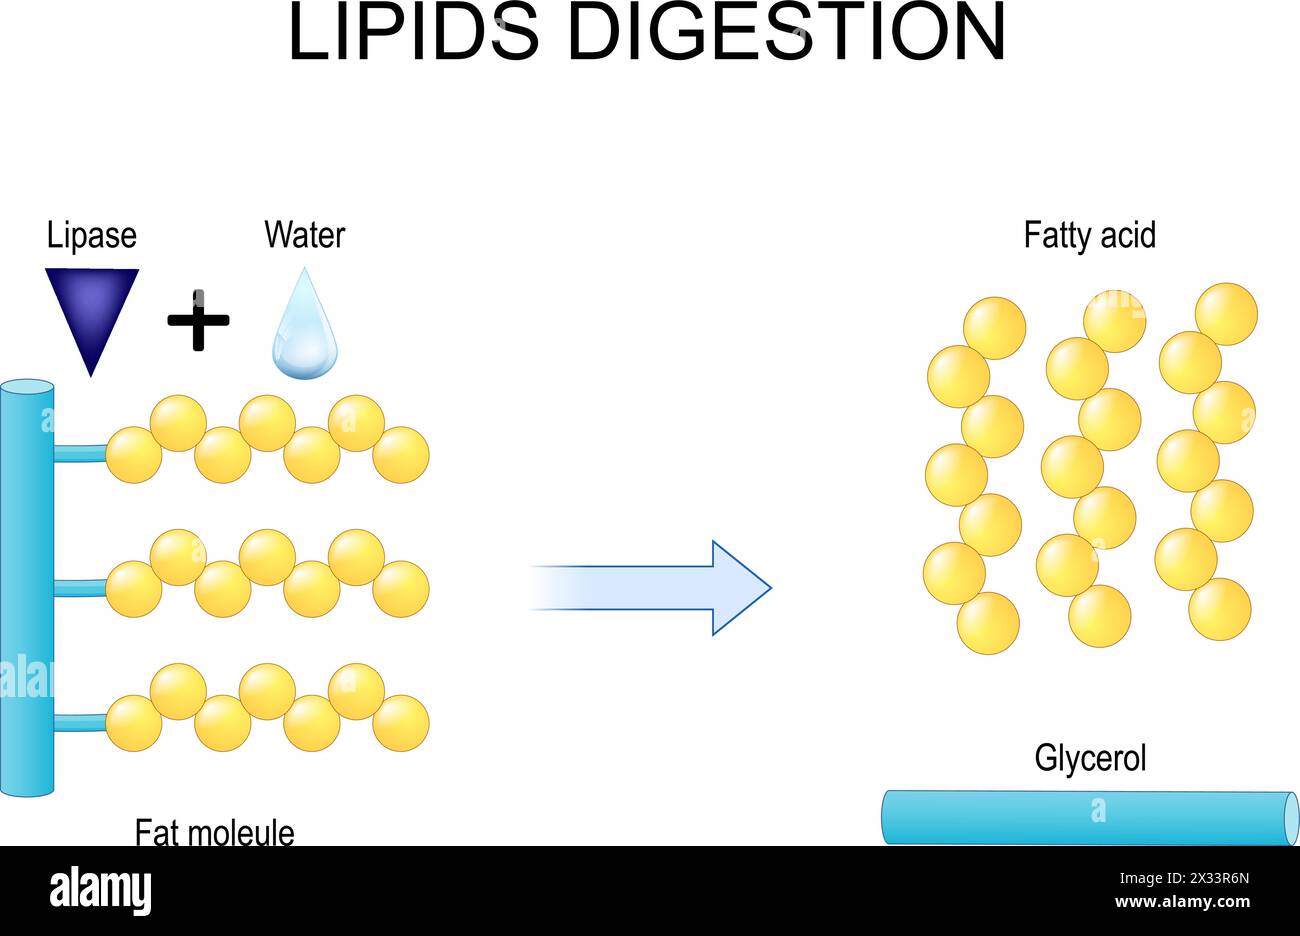 Lipidverdauung. Lipolyse. Enzyme Lipase, die die Hydrolyse von Fetten katalysiert. Illustration der Vektorabwicklung Stock Vektor